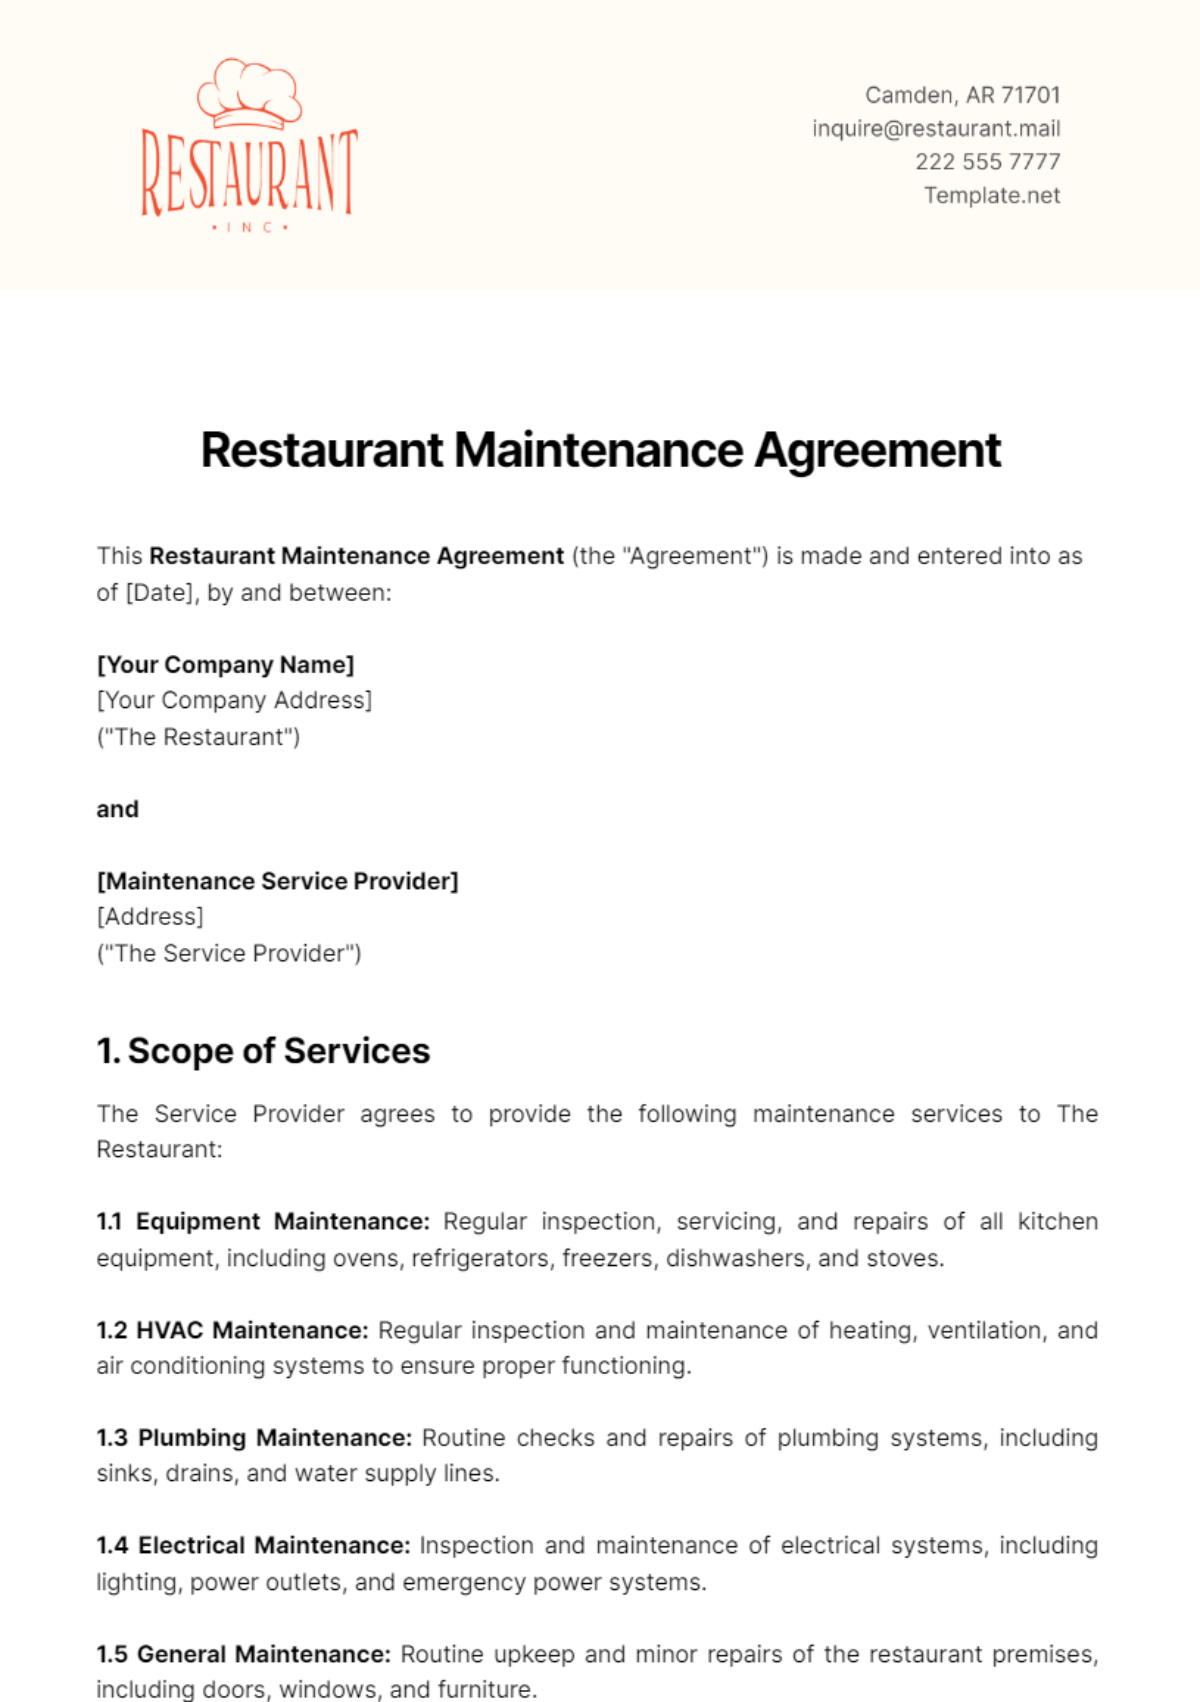 Restaurant Maintenance Agreement Template